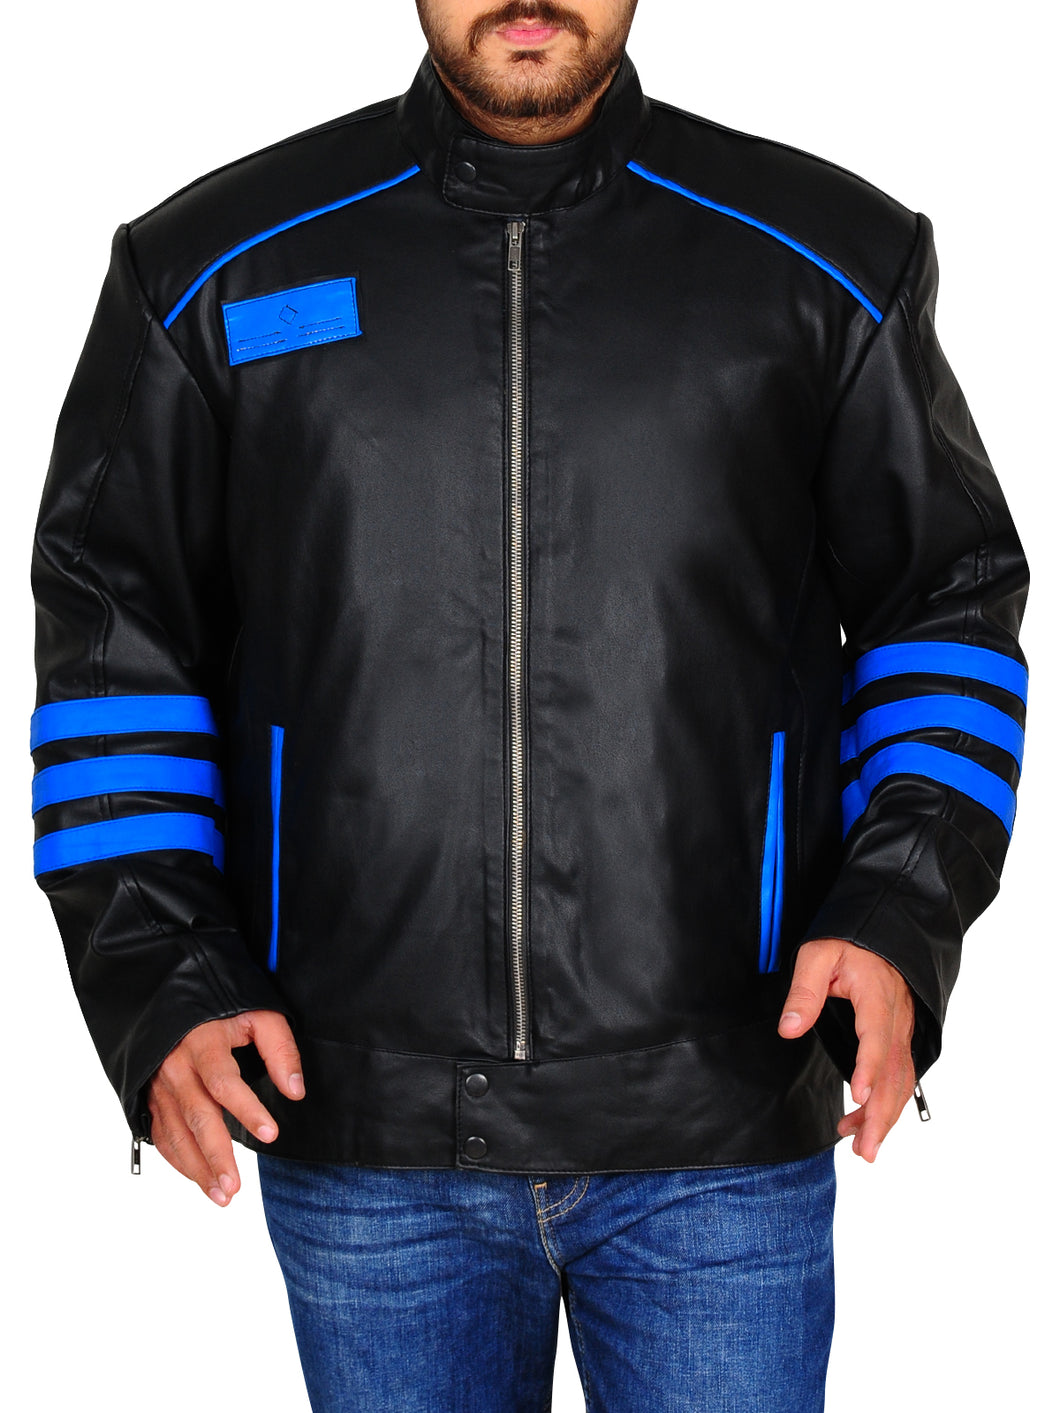 Black & Blue Biker Leather Jacket - Shearling leather